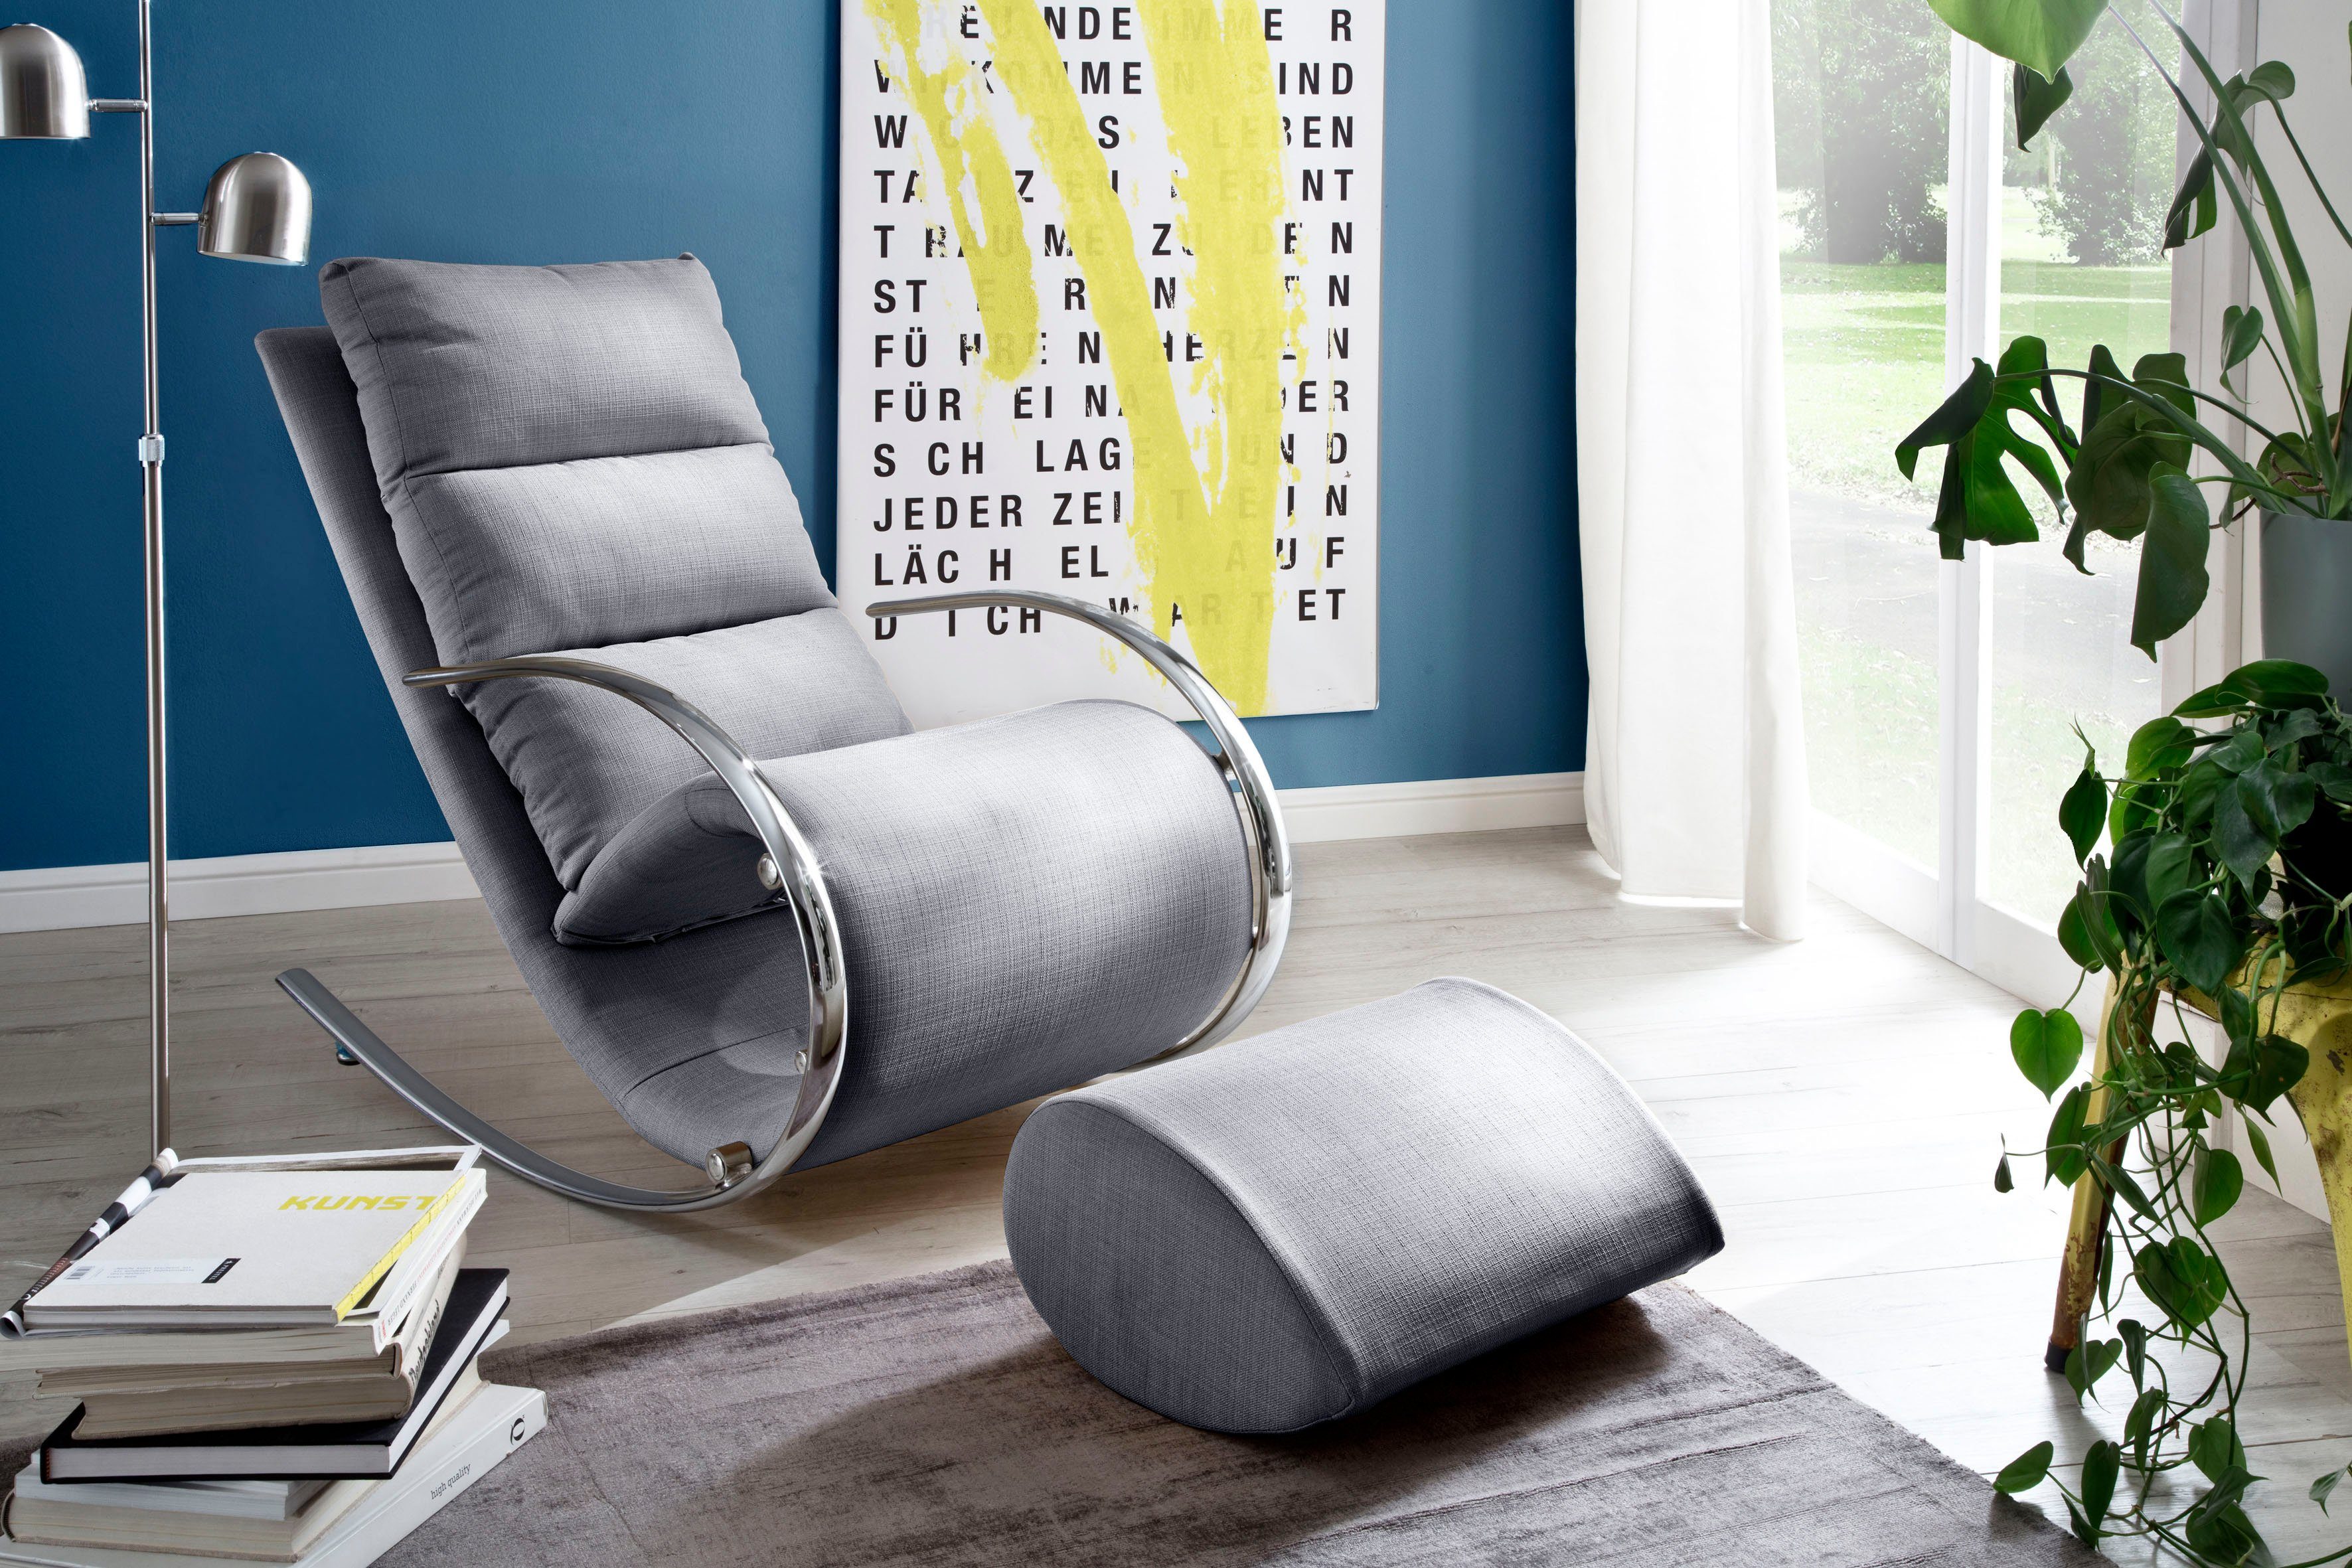 Manie Voorschrift Slechthorend MCA furniture Relaxfauteuil York Relaxfauteuil met hocker, belastbaar tot  100 kg in de online shop | OTTO